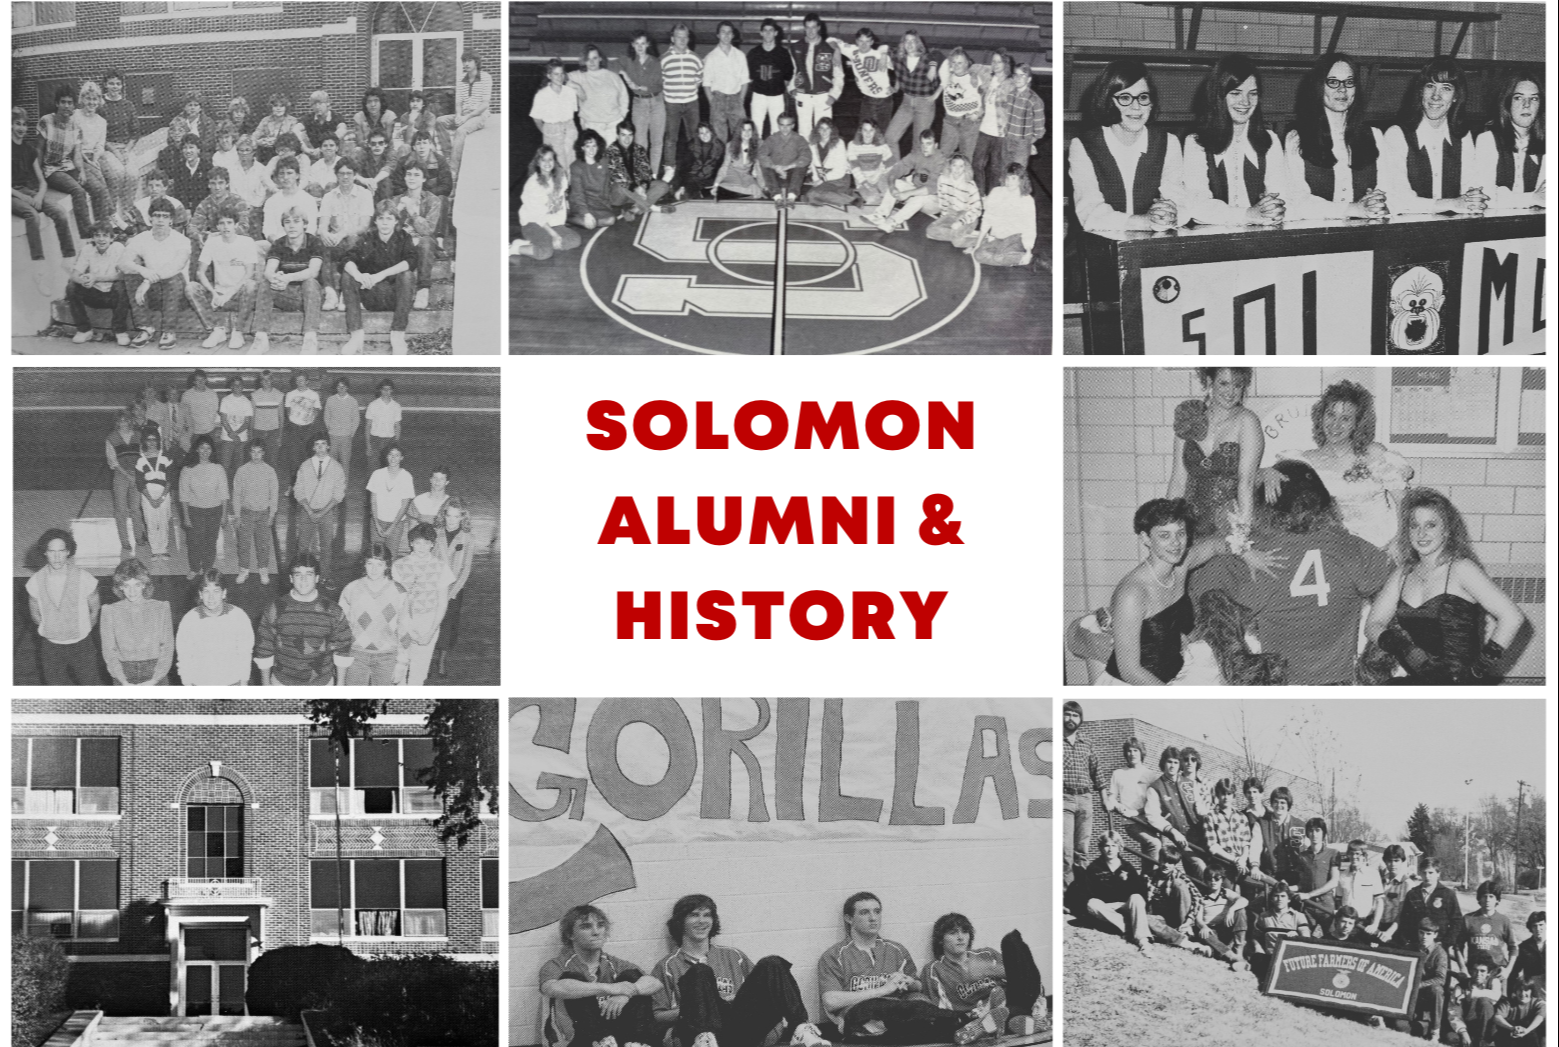 Solomon Alumni & History